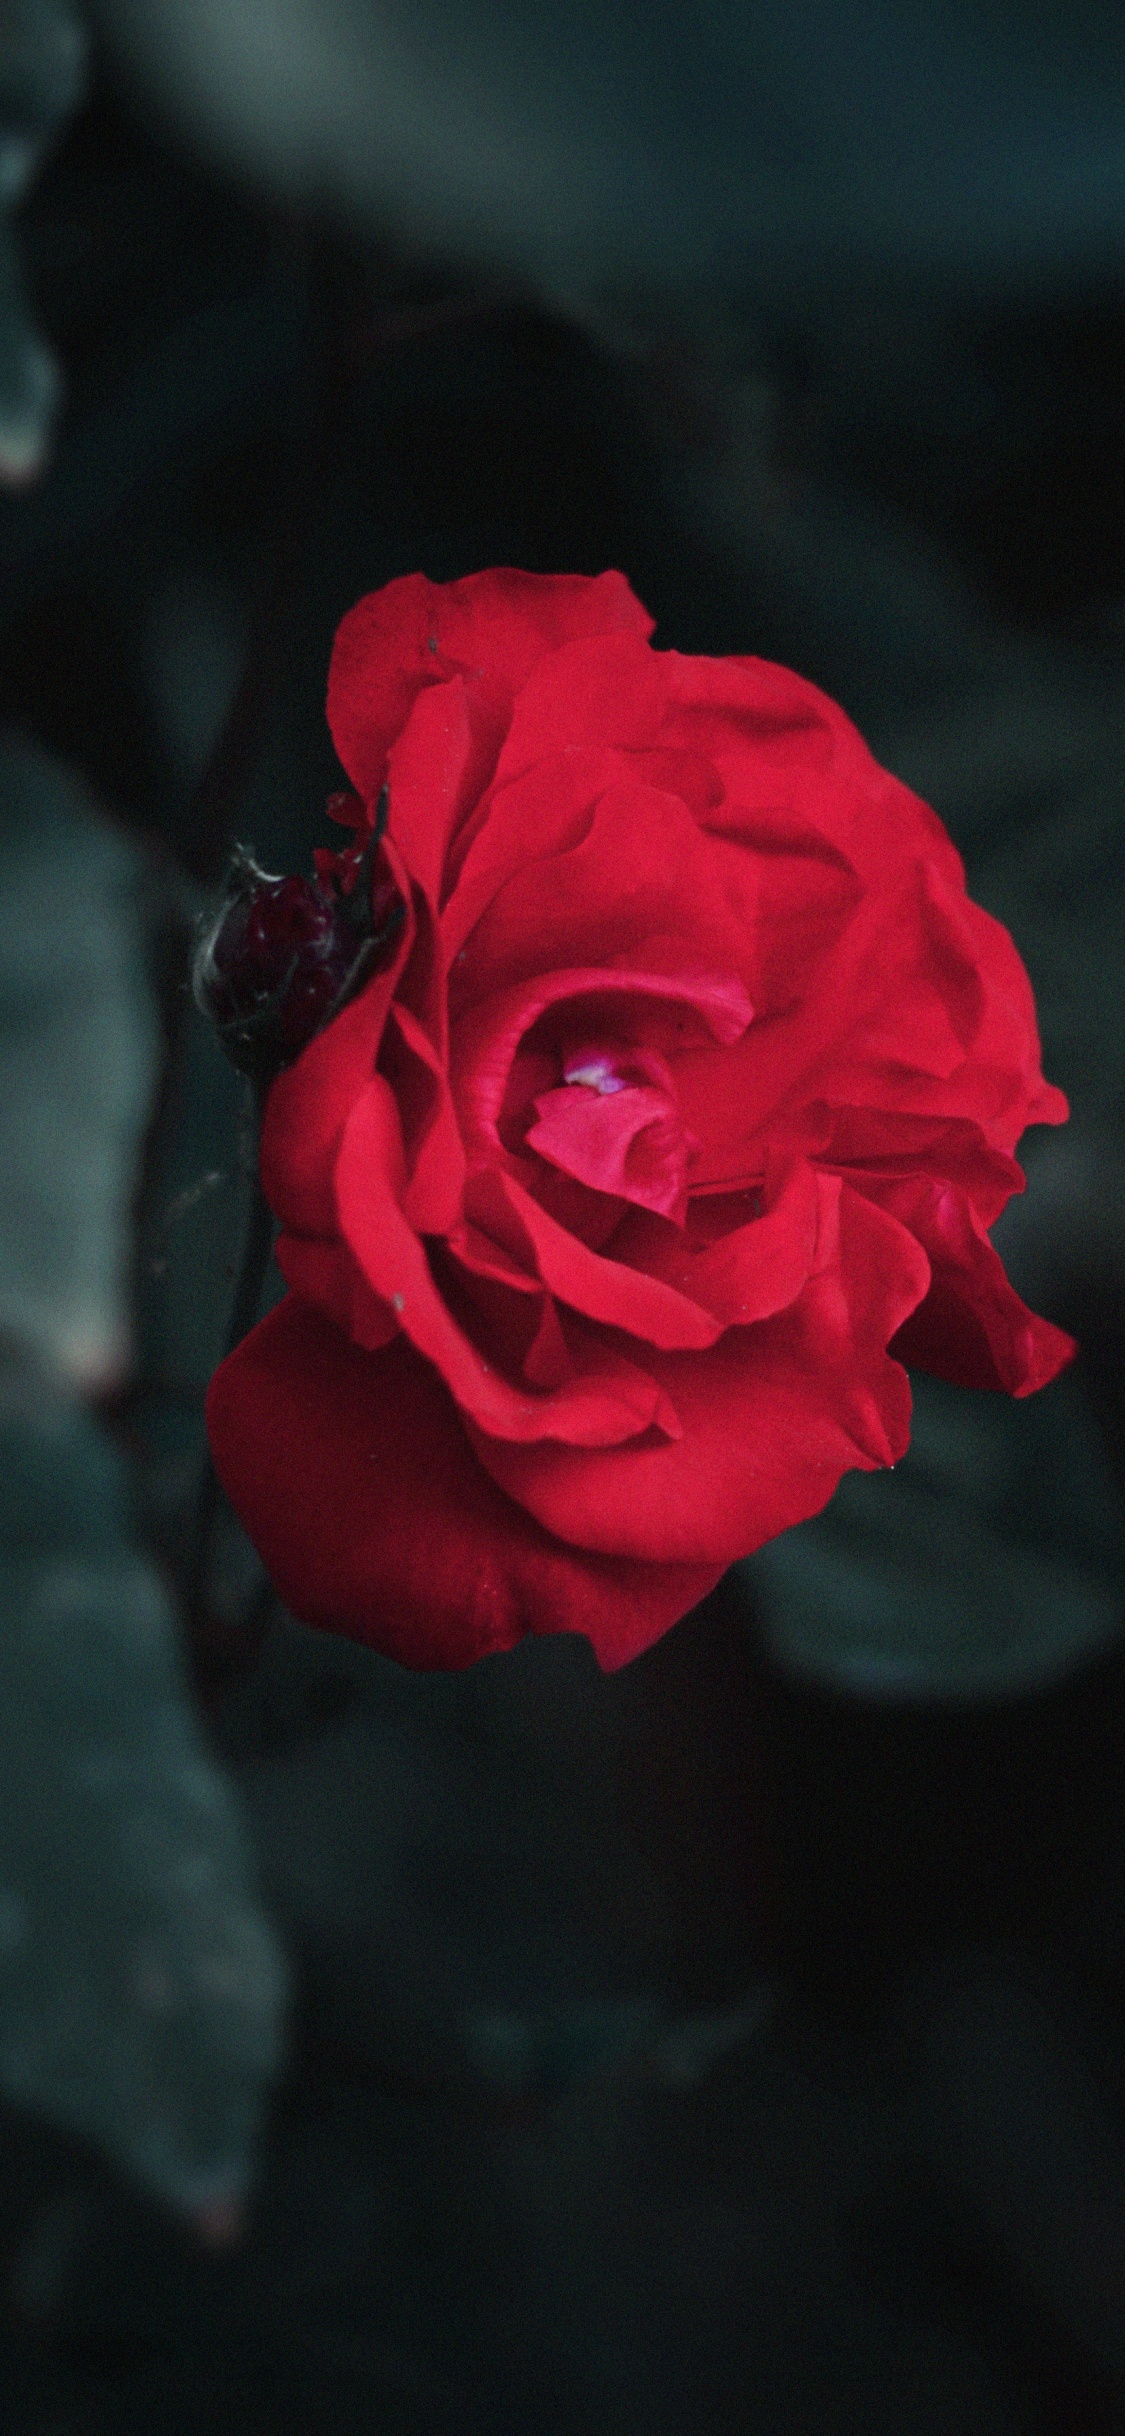 Rosa Roja en Fotografía de Cerca. Wallpaper in 1125x2436 Resolution